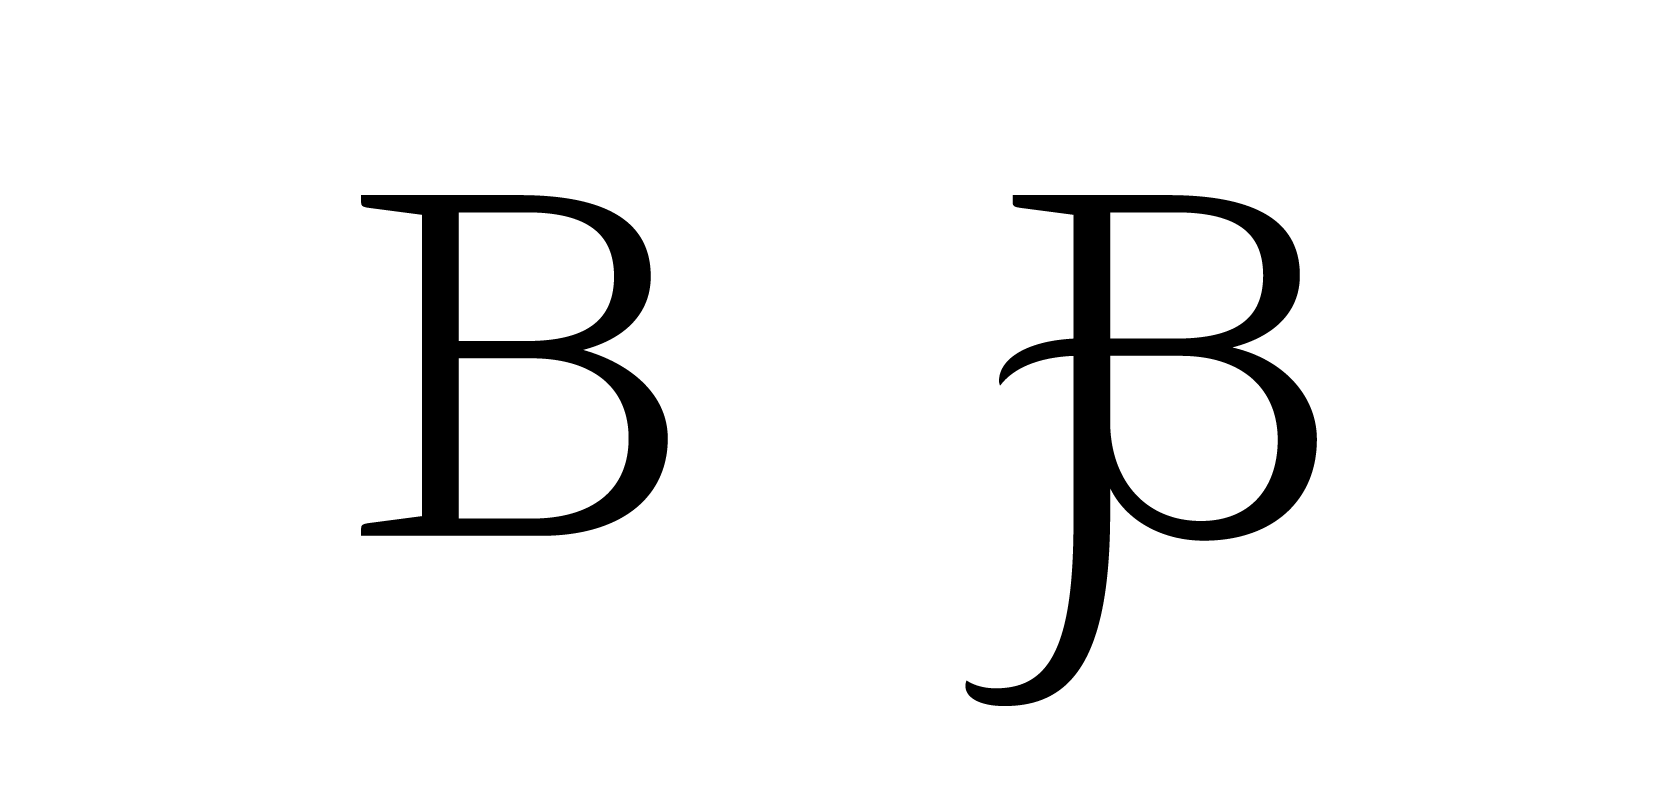 Буква «B» и её альтернативная версия со свошем